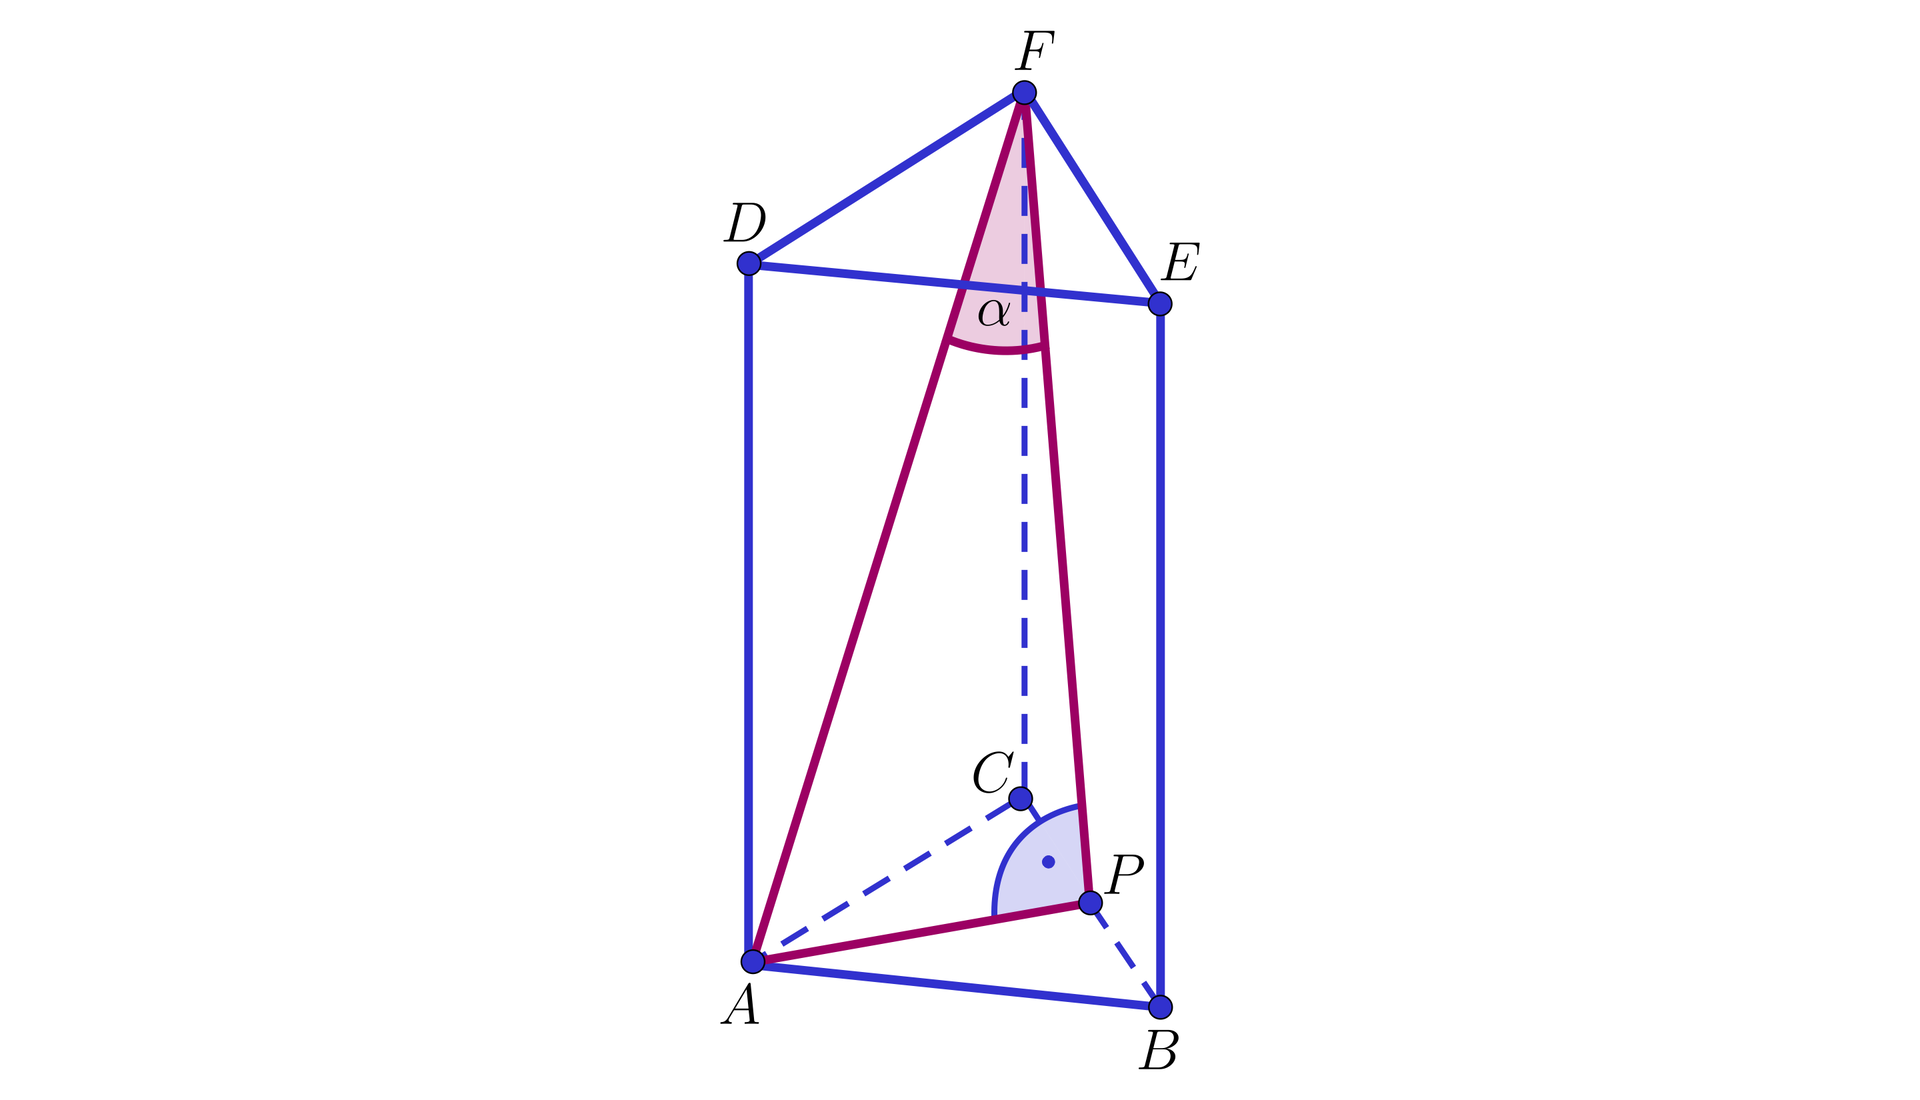 Ilustracja przedstawia graniastosłup prawidłowy trójkątny A B C D E F. Środek krawędzi podstawy B C oznaczono punktem P.  W środku graniastosłupa powstał trójkąt prostokątny A P F. Kąt przy wierzchołku F ma miarę α.